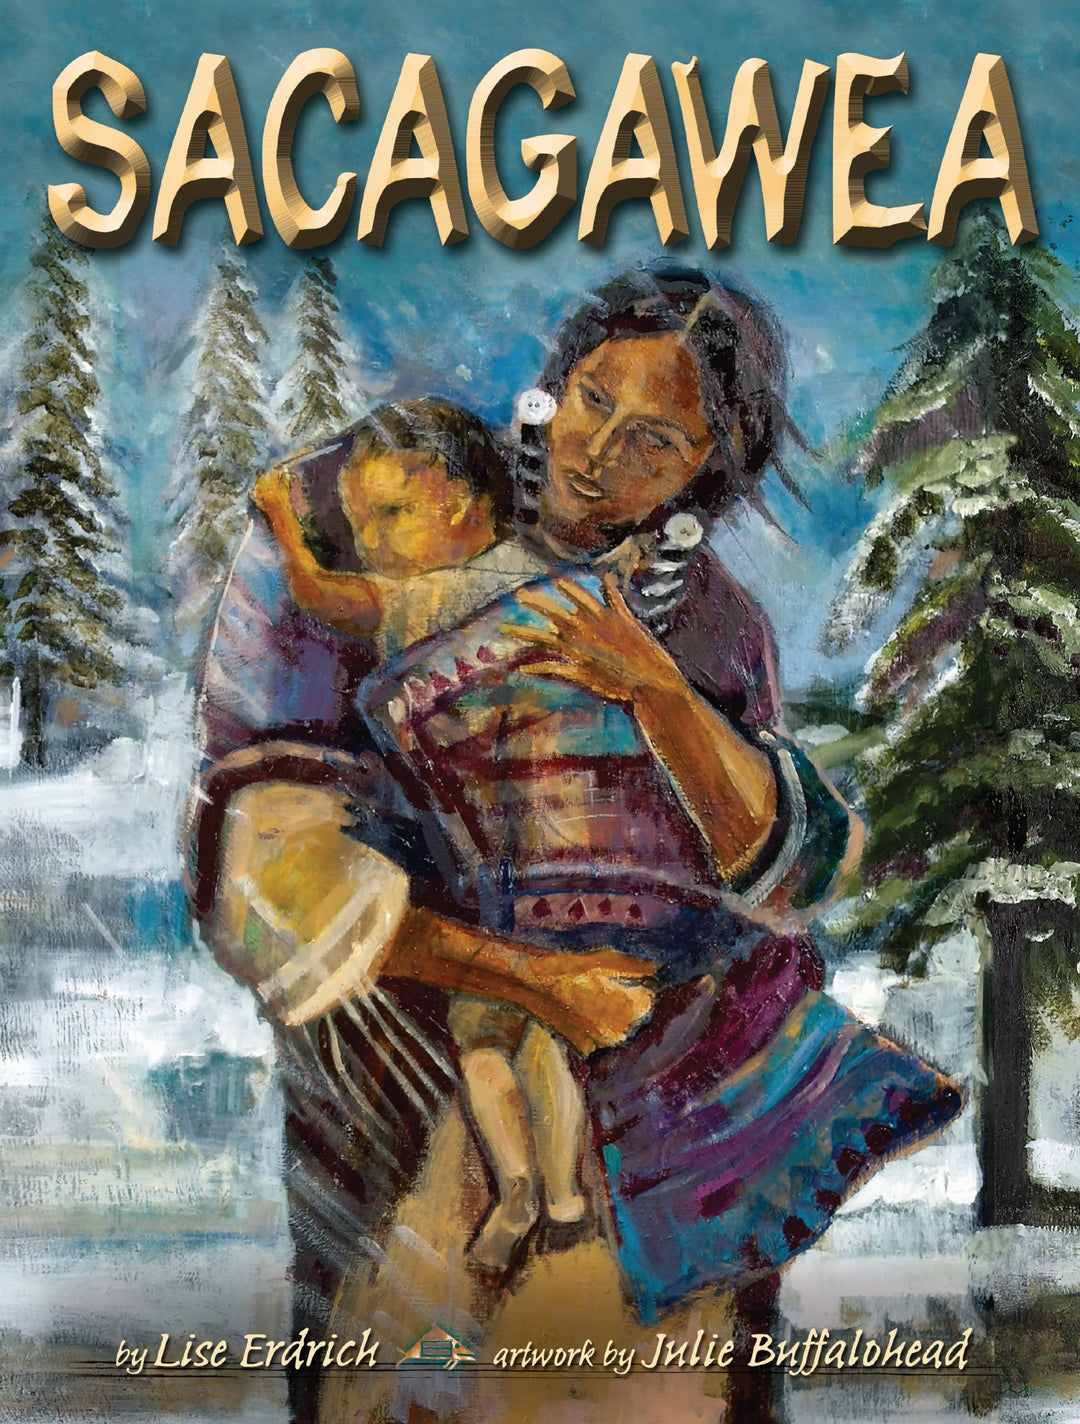 Sacagawea by Lise Erdrich